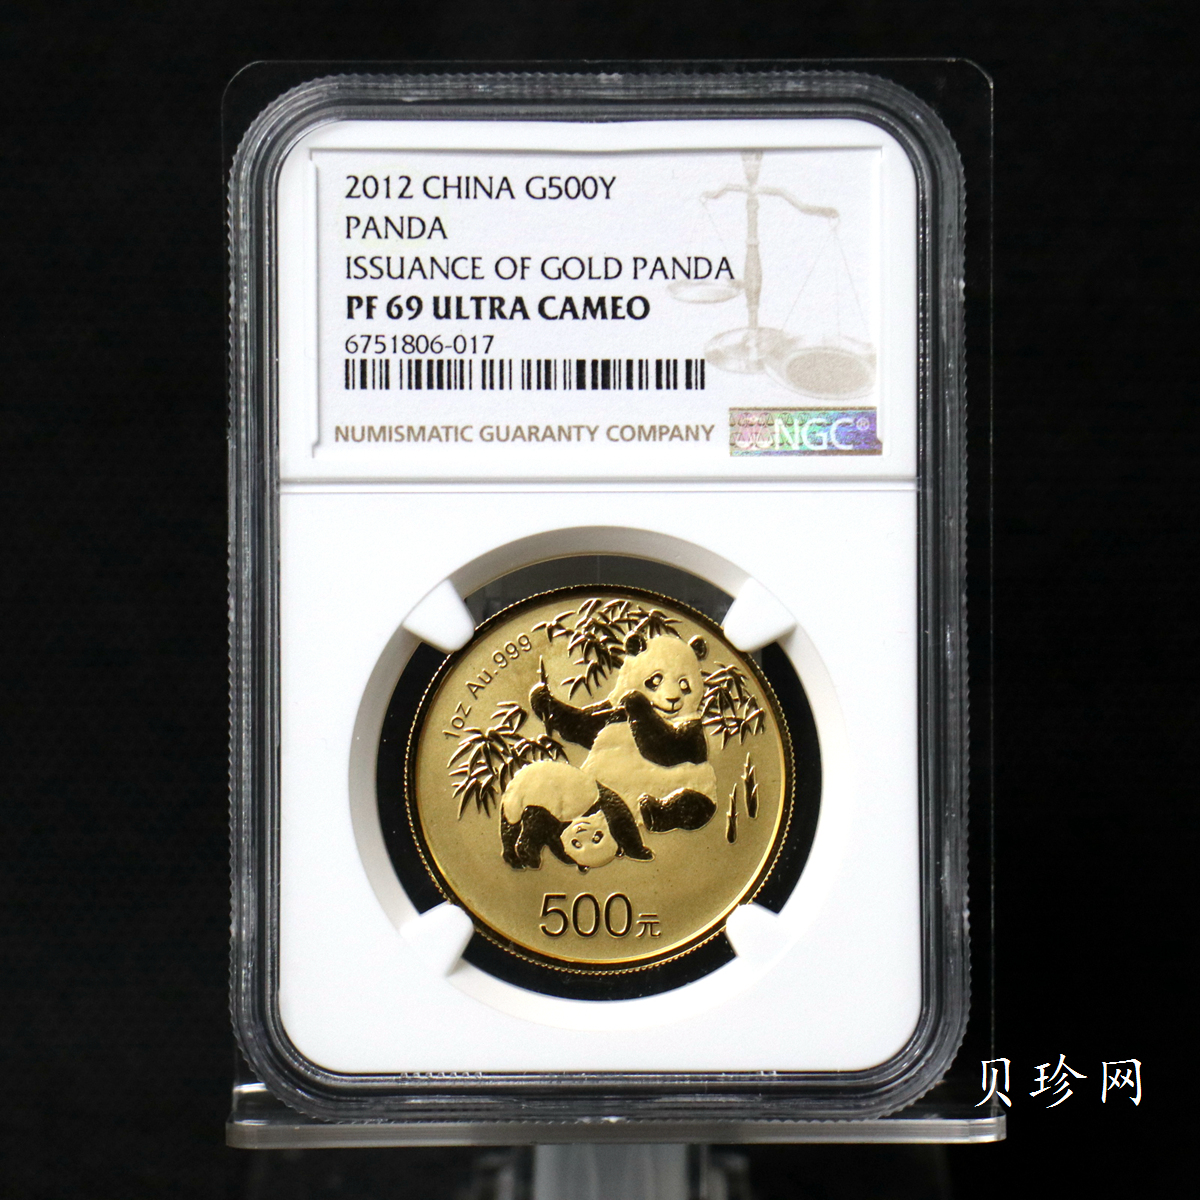 【120202】2012年熊猫金币发行30周年1盎司精制金币